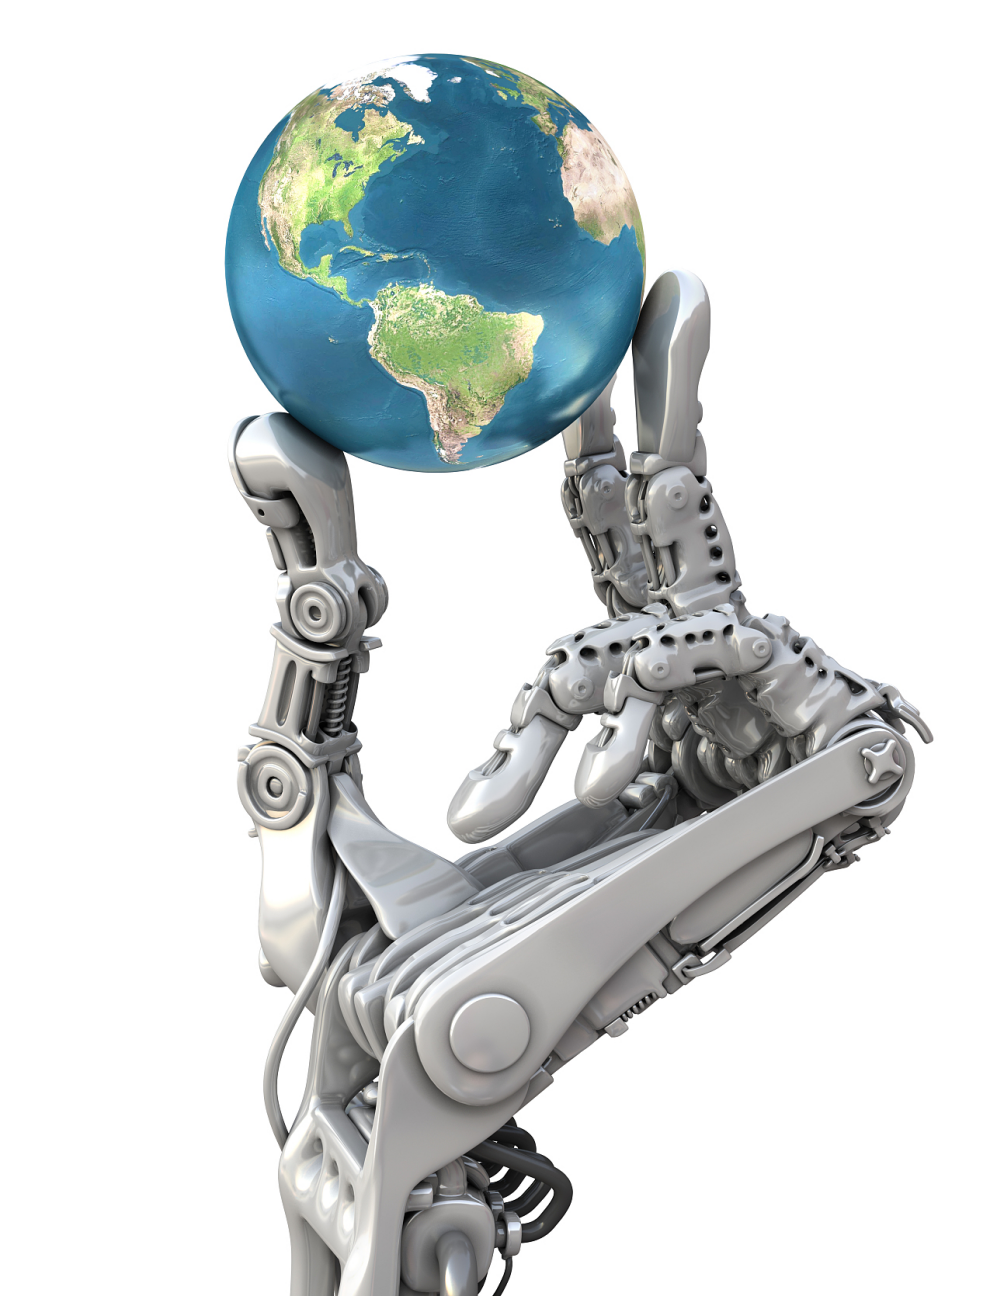 我国工业机器人装机量占全球比重超过50%